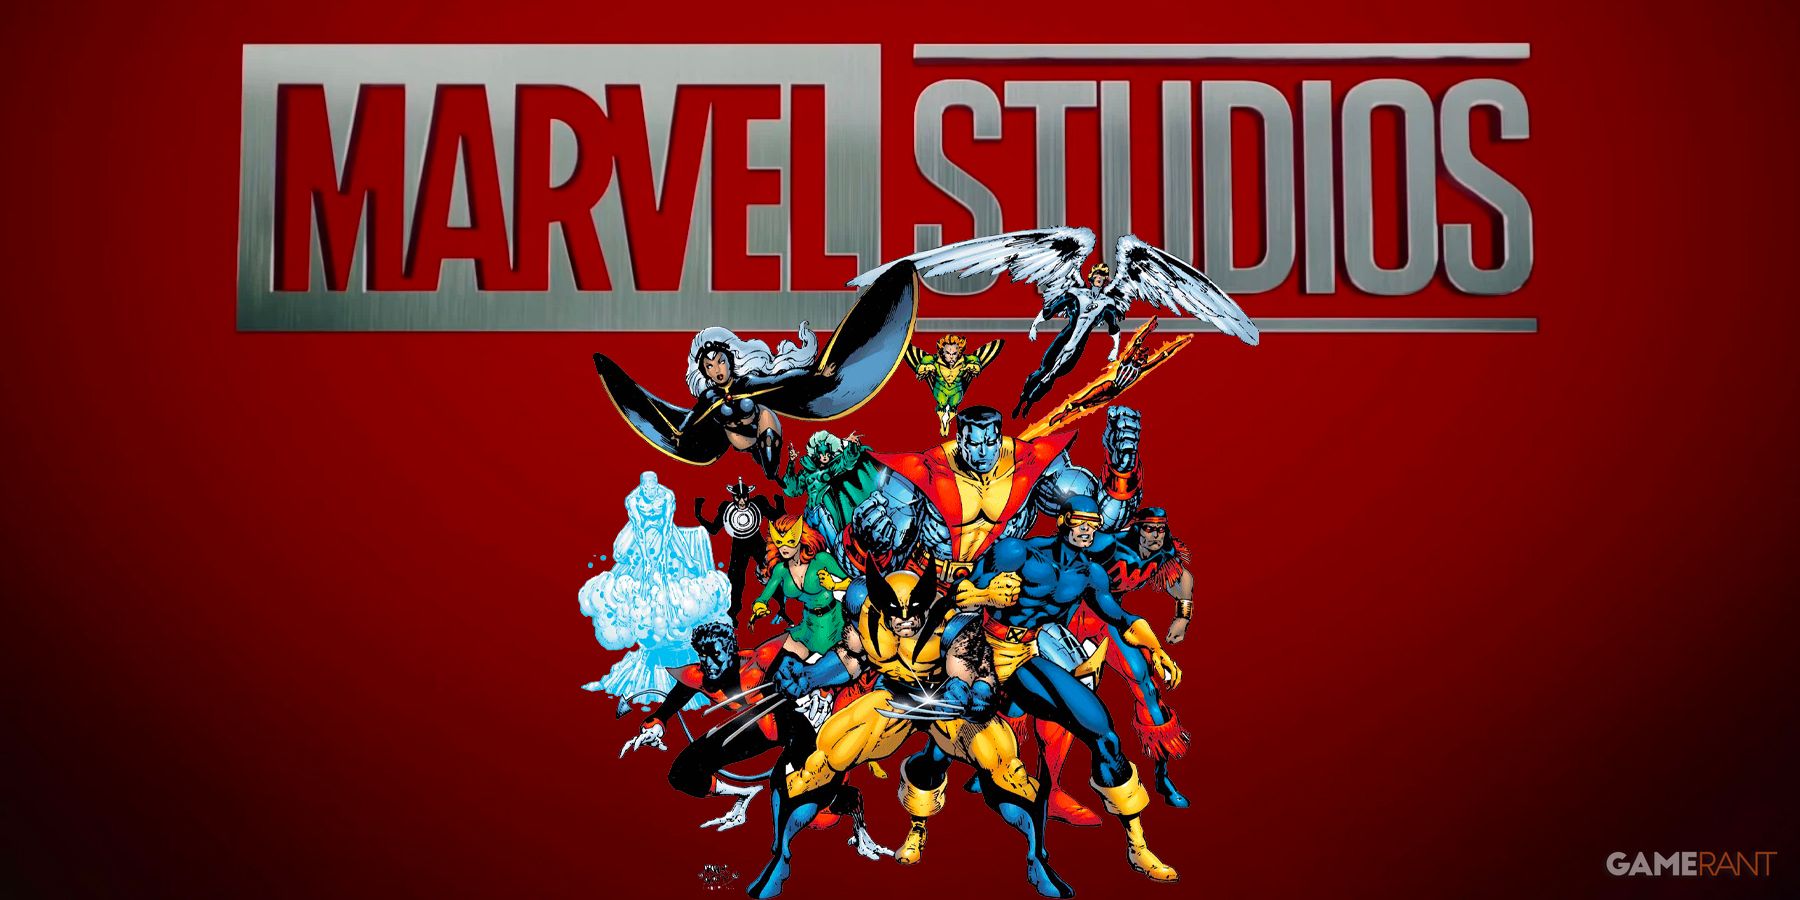 X-Men MCU Reboot Writer Meetings Taking Place At Marvel Studios Soon